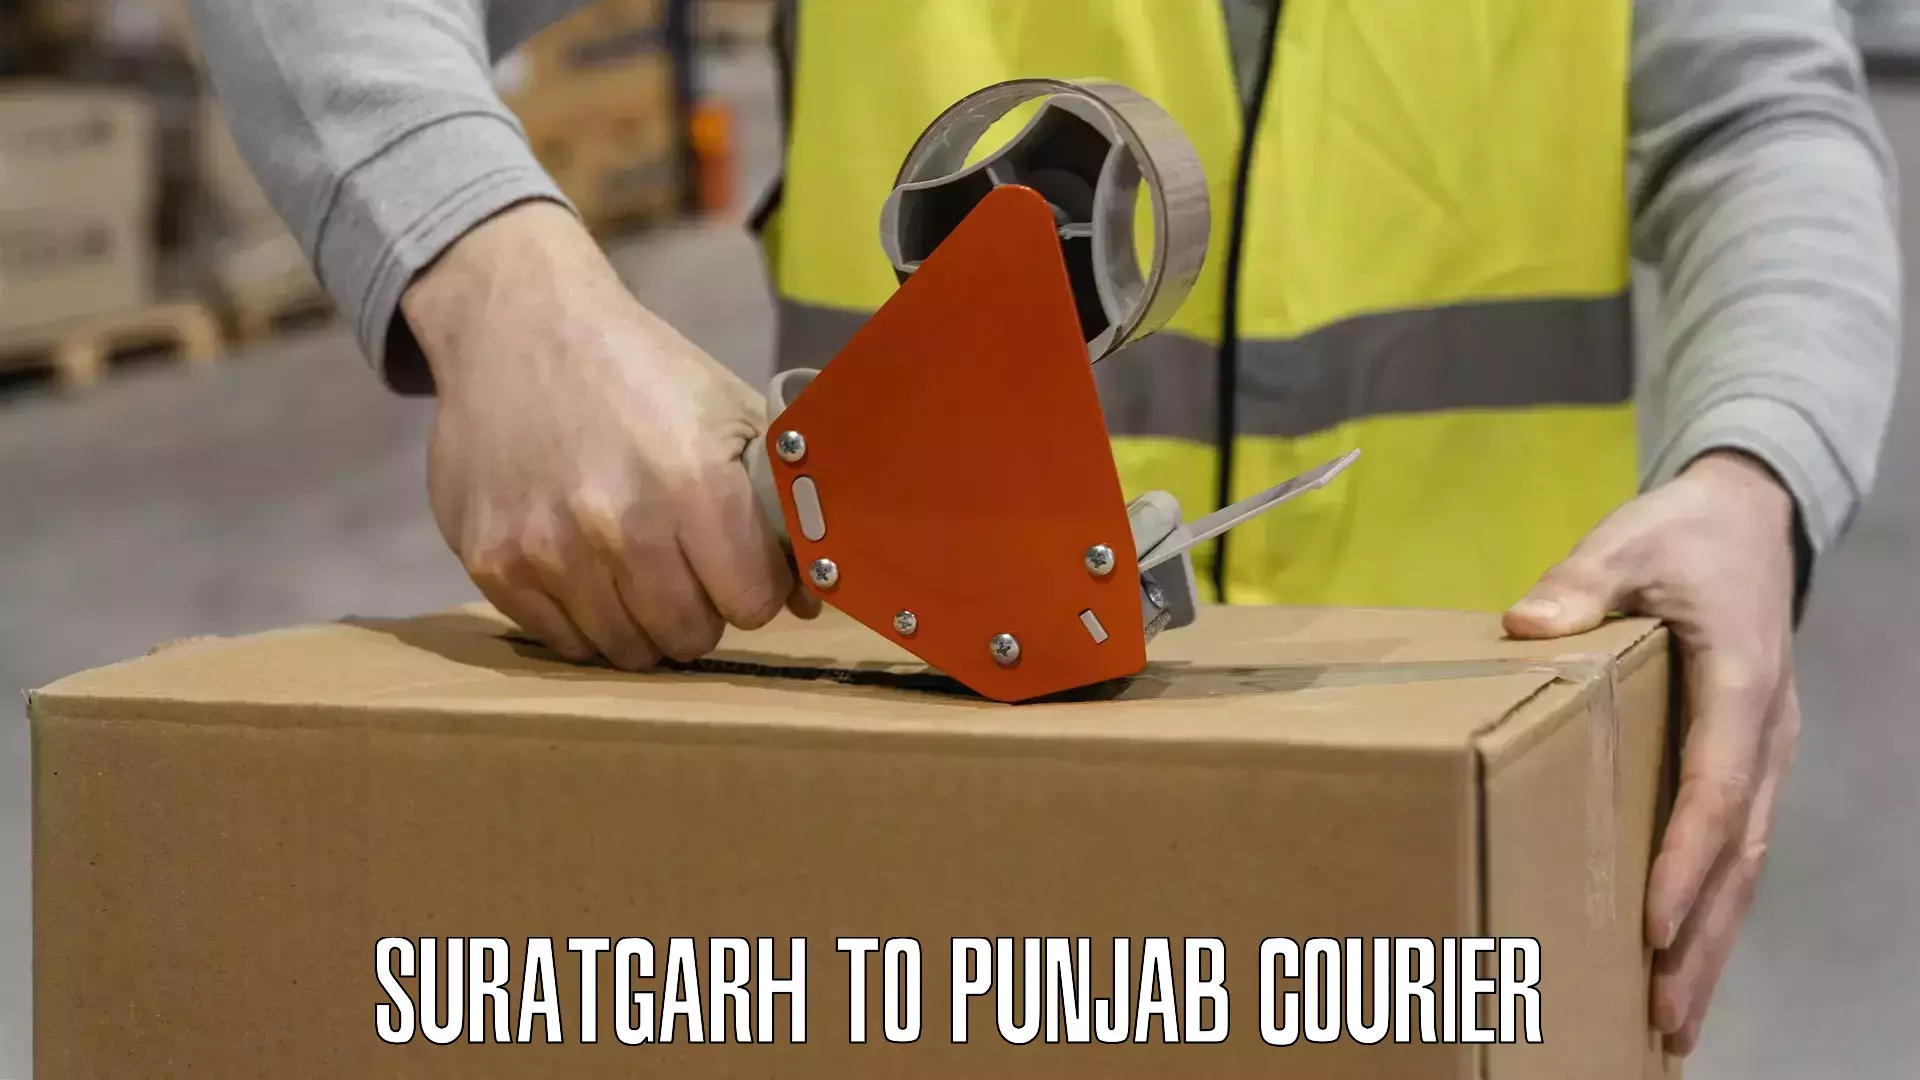 24/7 courier service Suratgarh to Phillaur